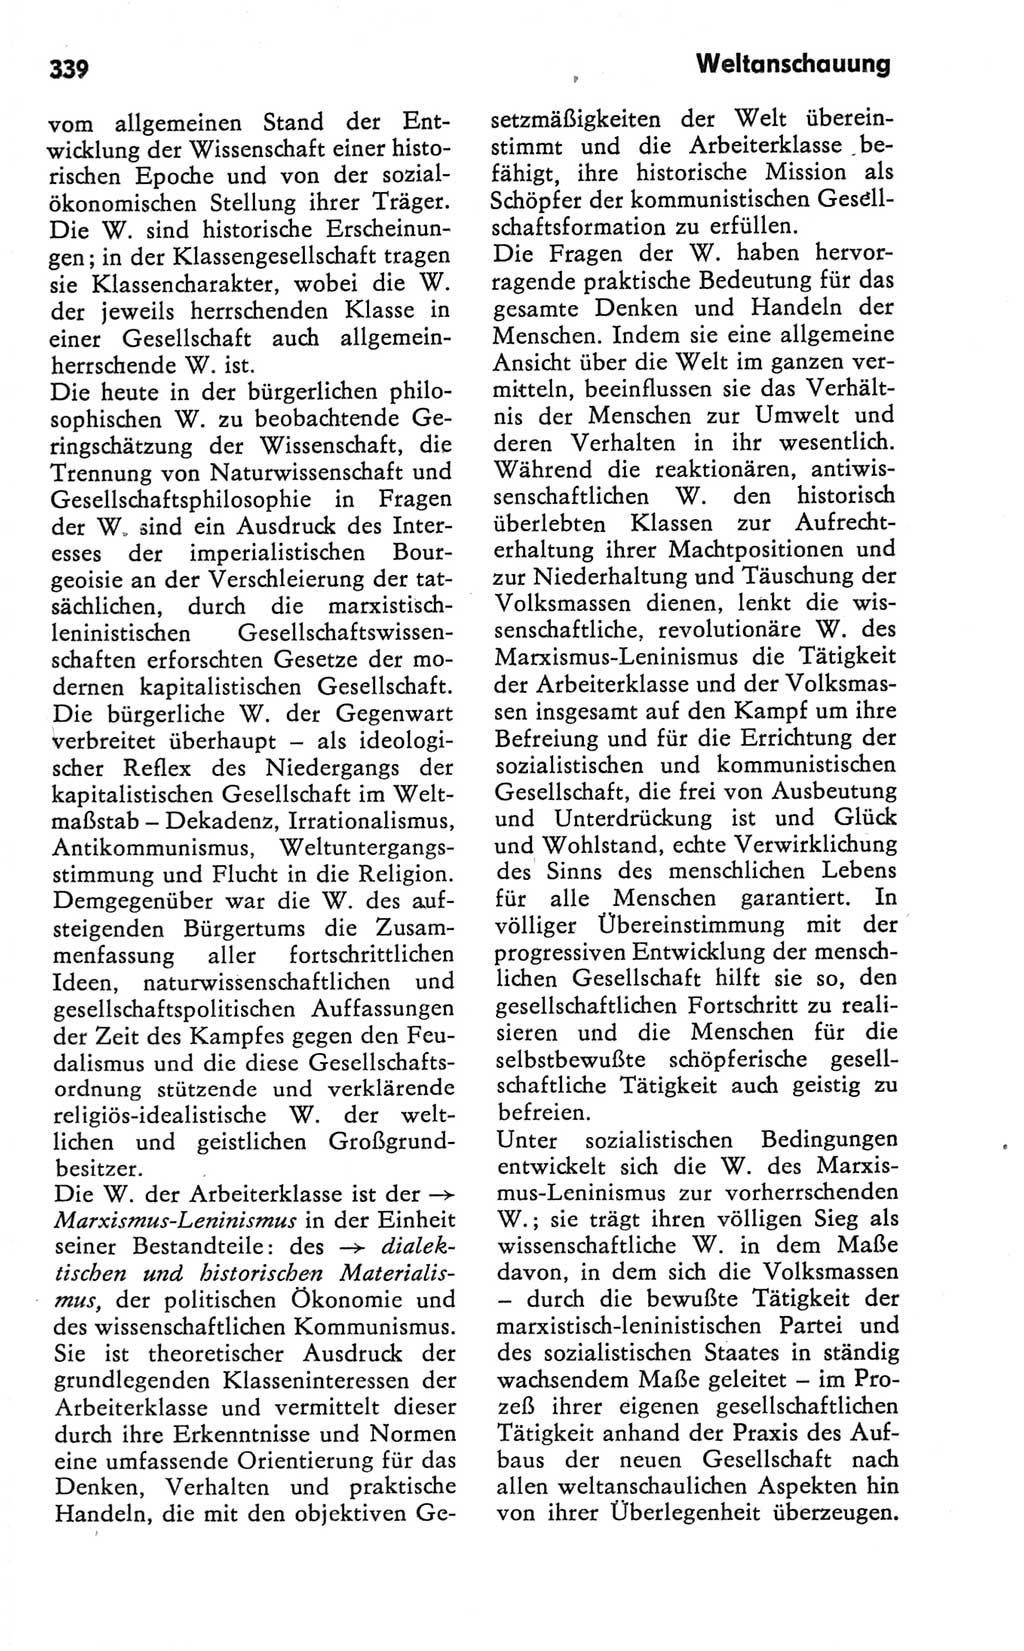 Kleines Wörterbuch der marxistisch-leninistischen Philosophie [Deutsche Demokratische Republik (DDR)] 1981, Seite 339 (Kl. Wb. ML Phil. DDR 1981, S. 339)